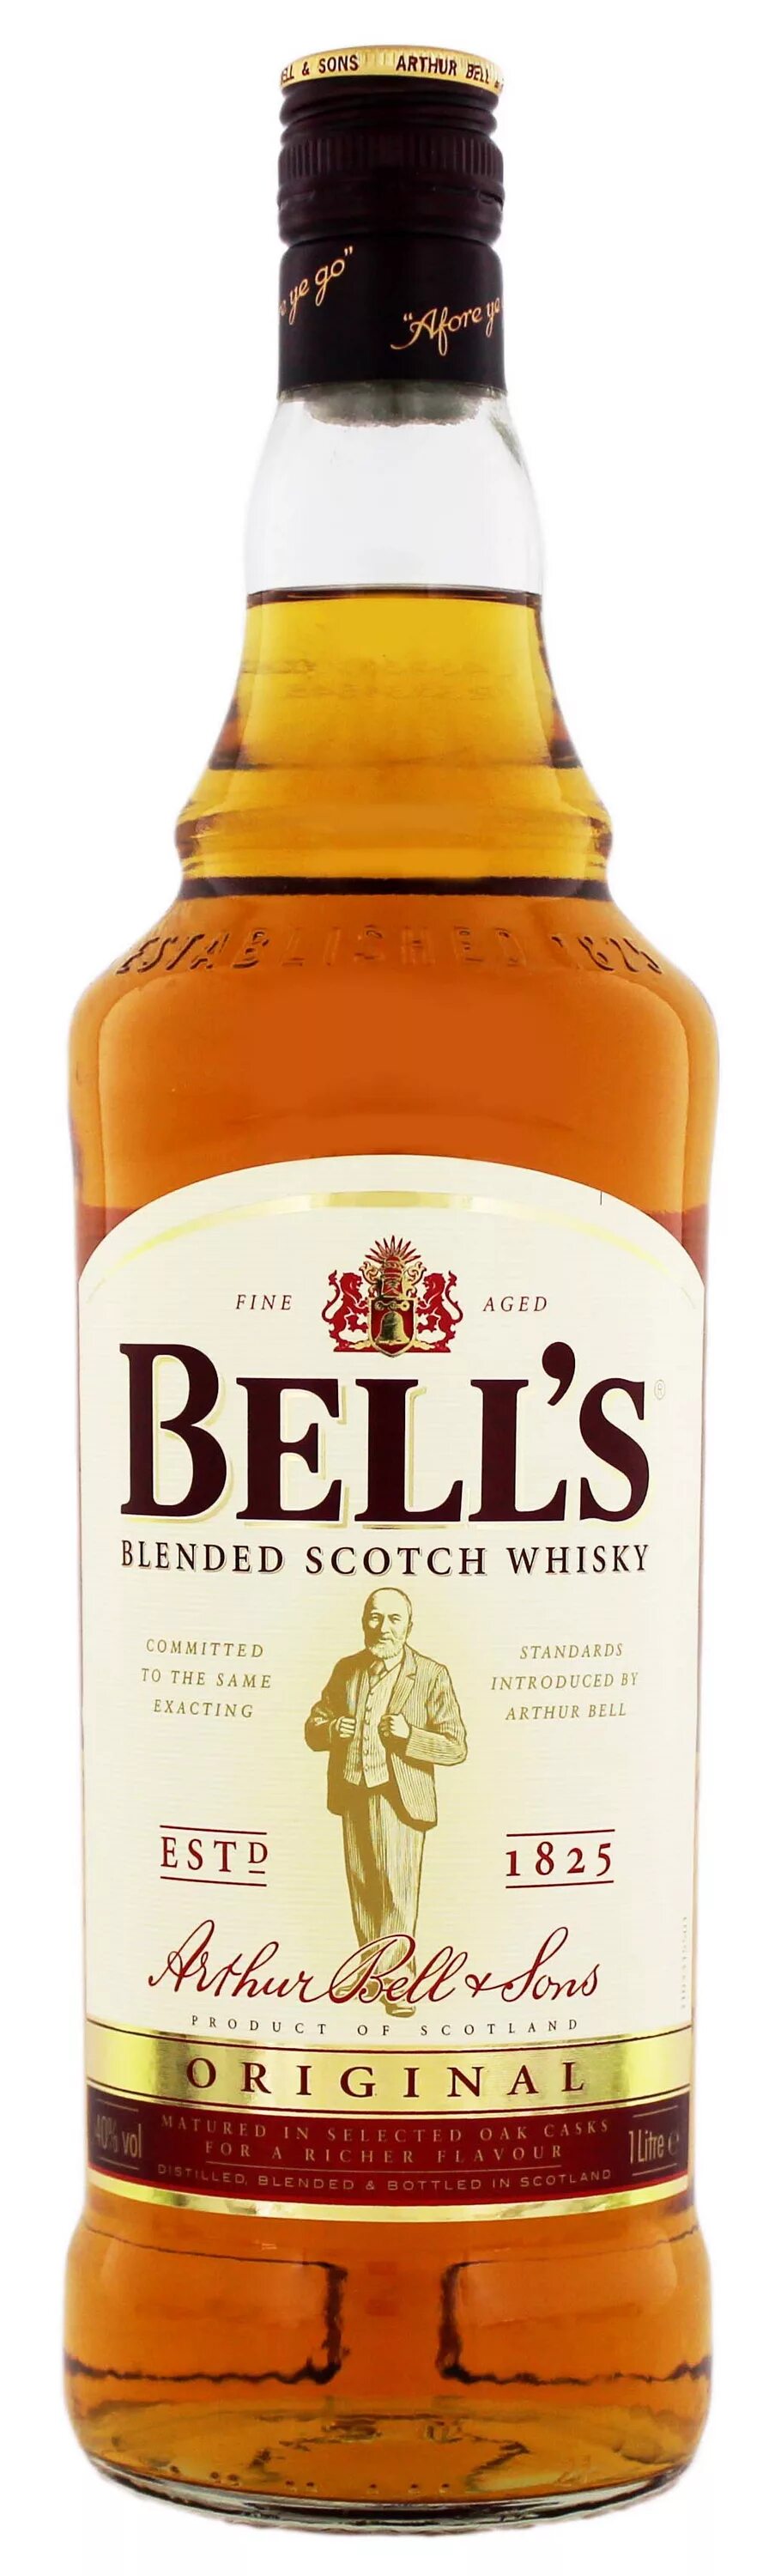 Виски Bells Blended Scotch Whisky 1825. Виски Бэллс 0.5. Bell's Blended Scotch Whisky 0.5. Виски Беллс оригинал 0.7. Bells whisky